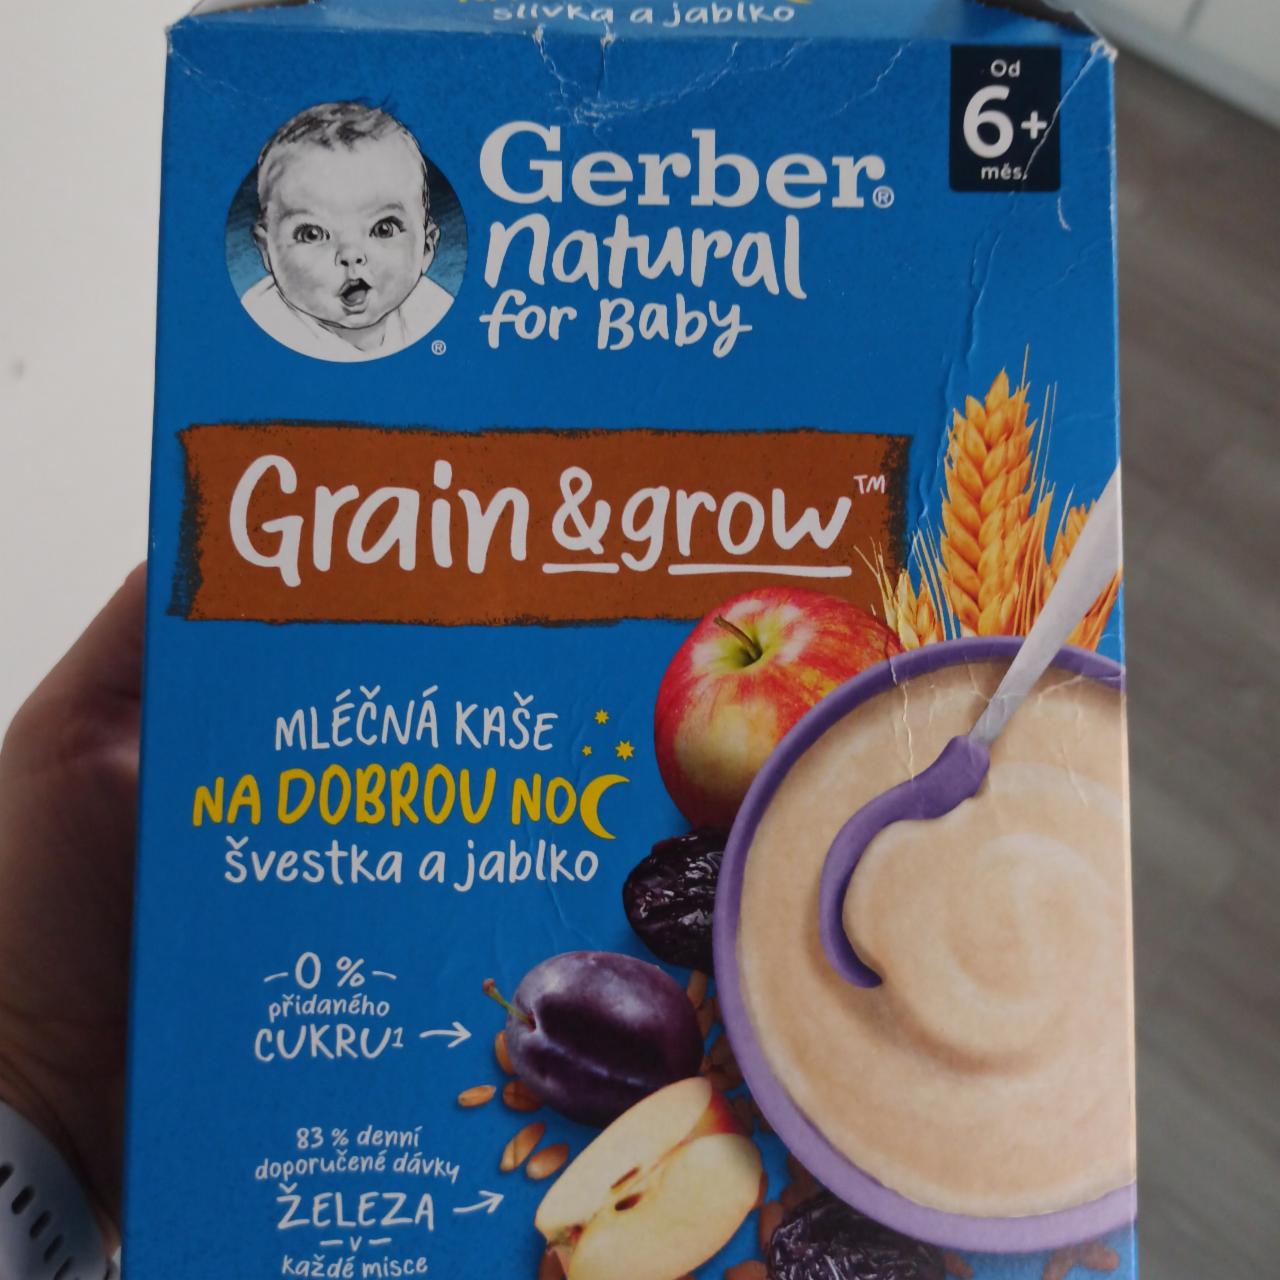 Fotografie - Grain & grow Mléčná kaše na dobrou noc švestka a jablko Gerber natural for baby